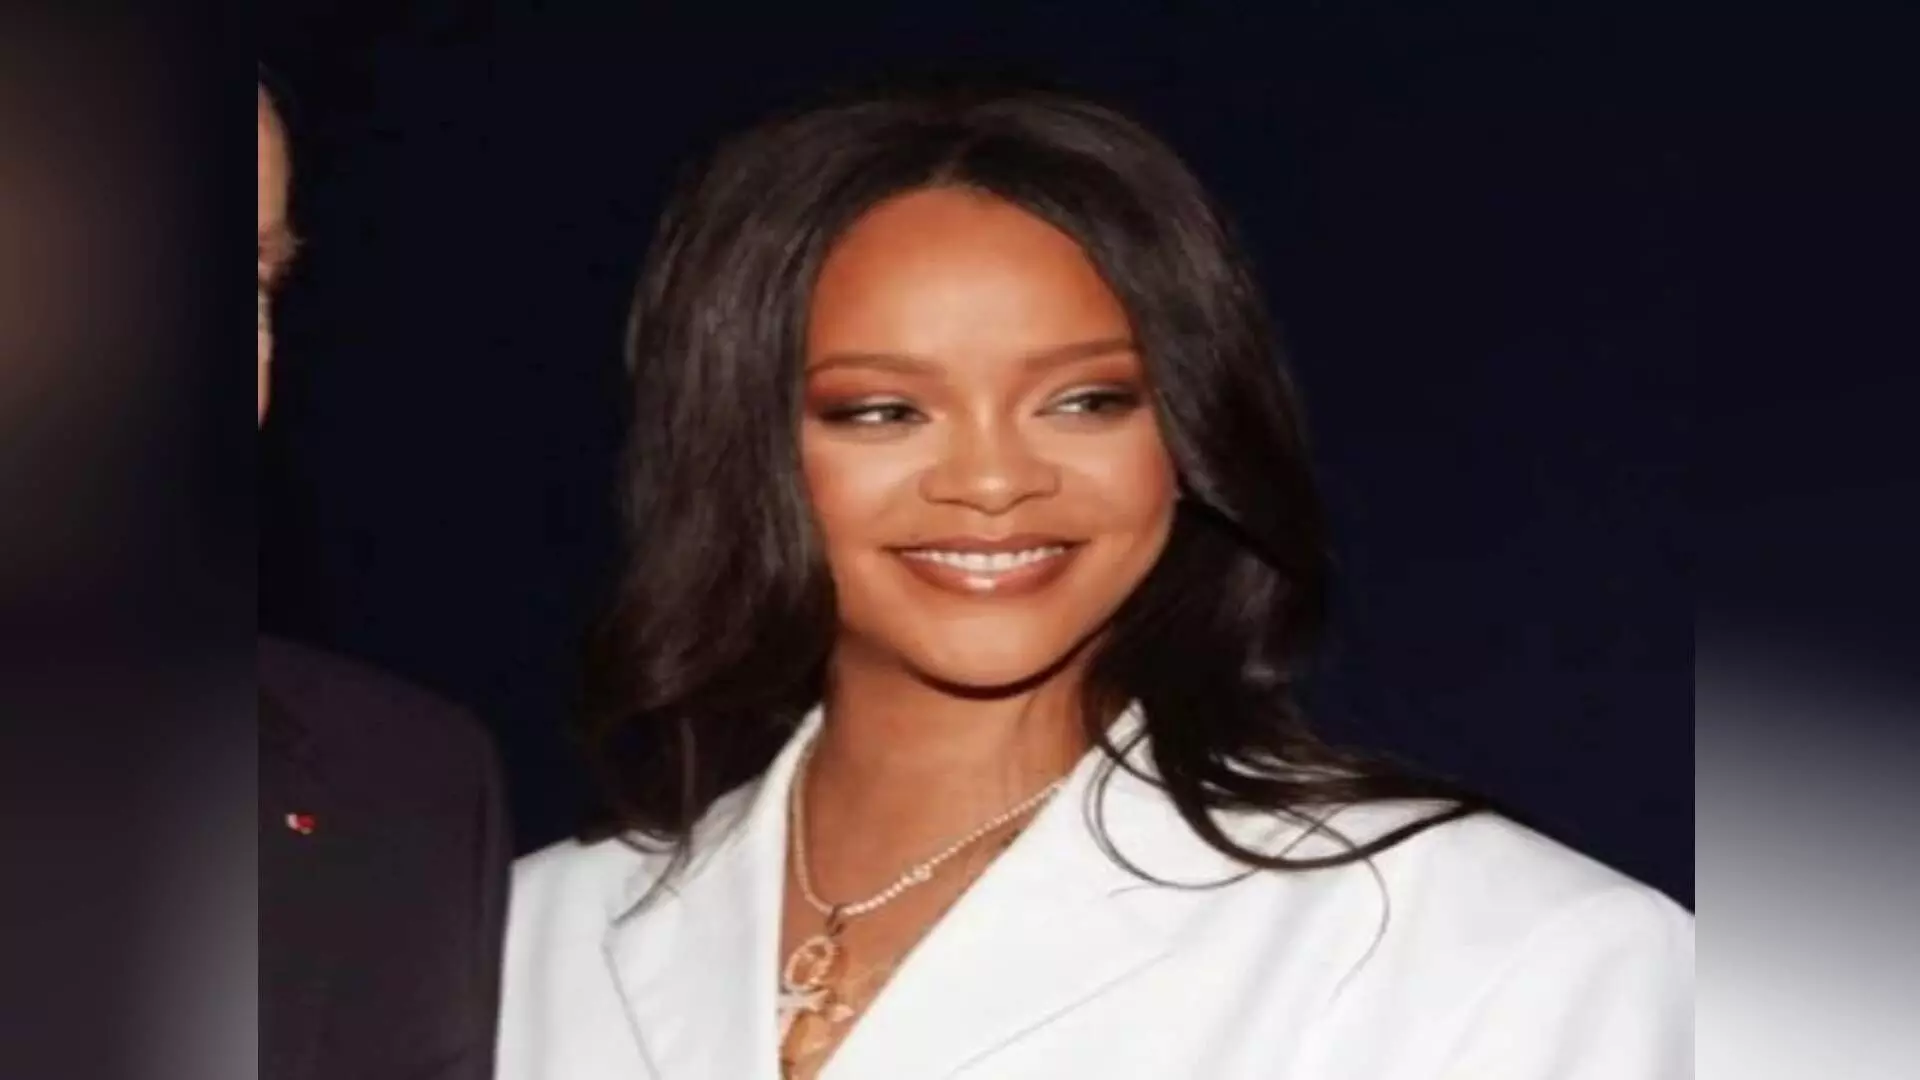 #Rihanna: शेतकरी आंदोलनाबाबत ट्विट केल्यानं रिहानाचा काय फायदा झाला?